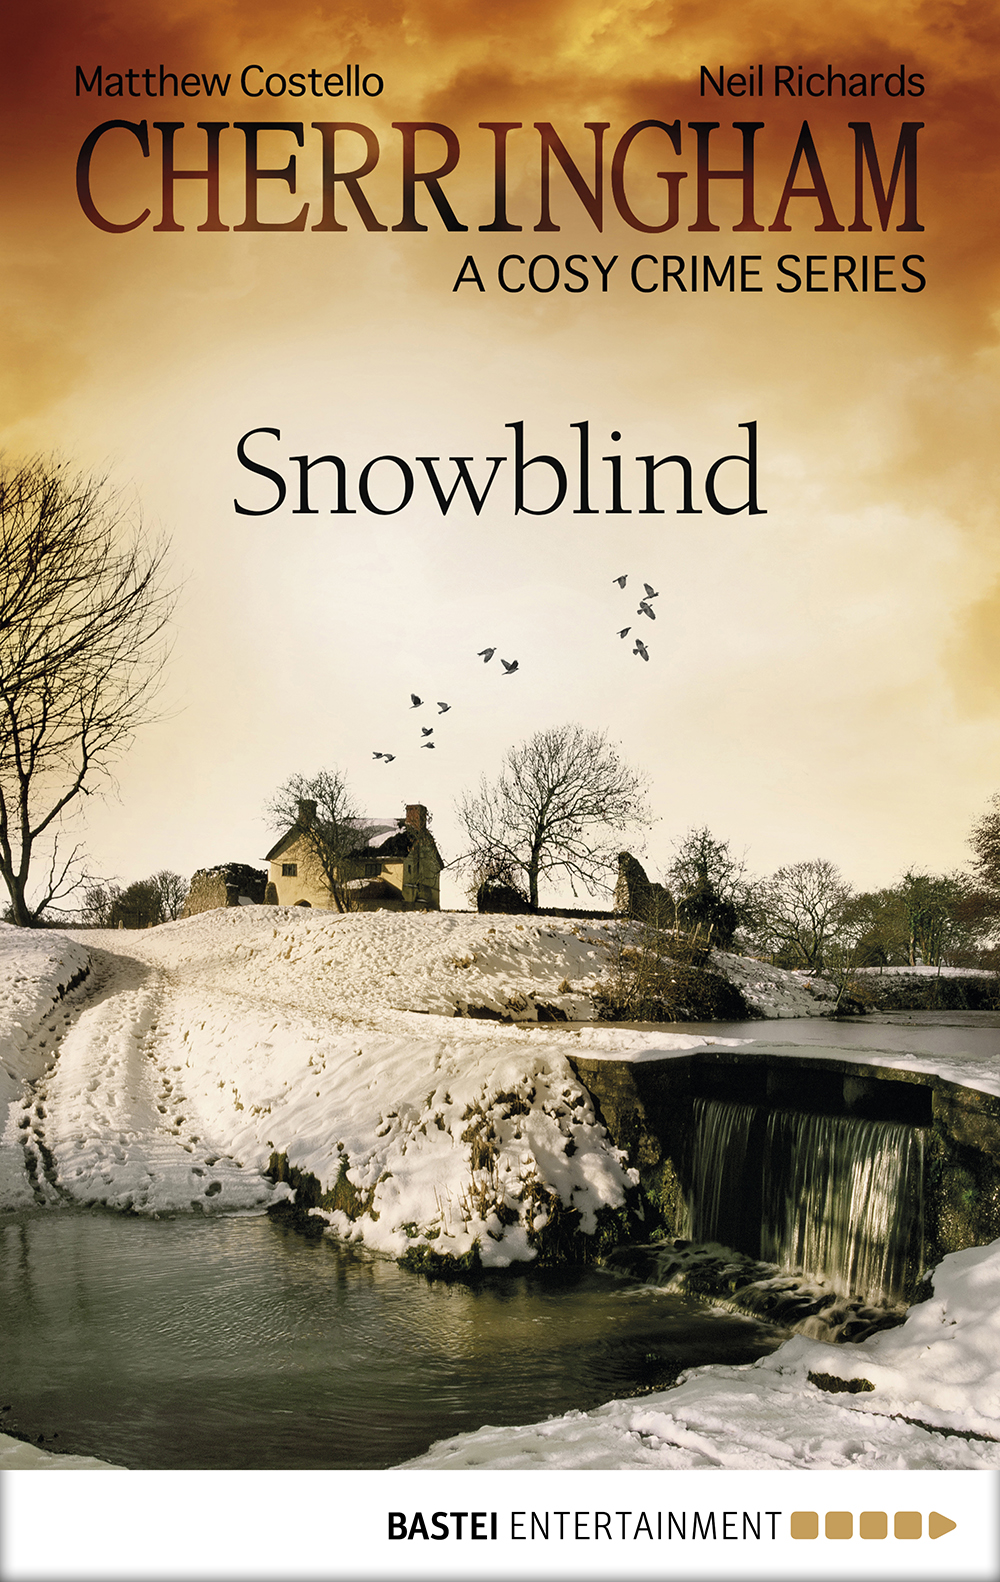 Cherringham--Snowblind (2015) by Neil Richards